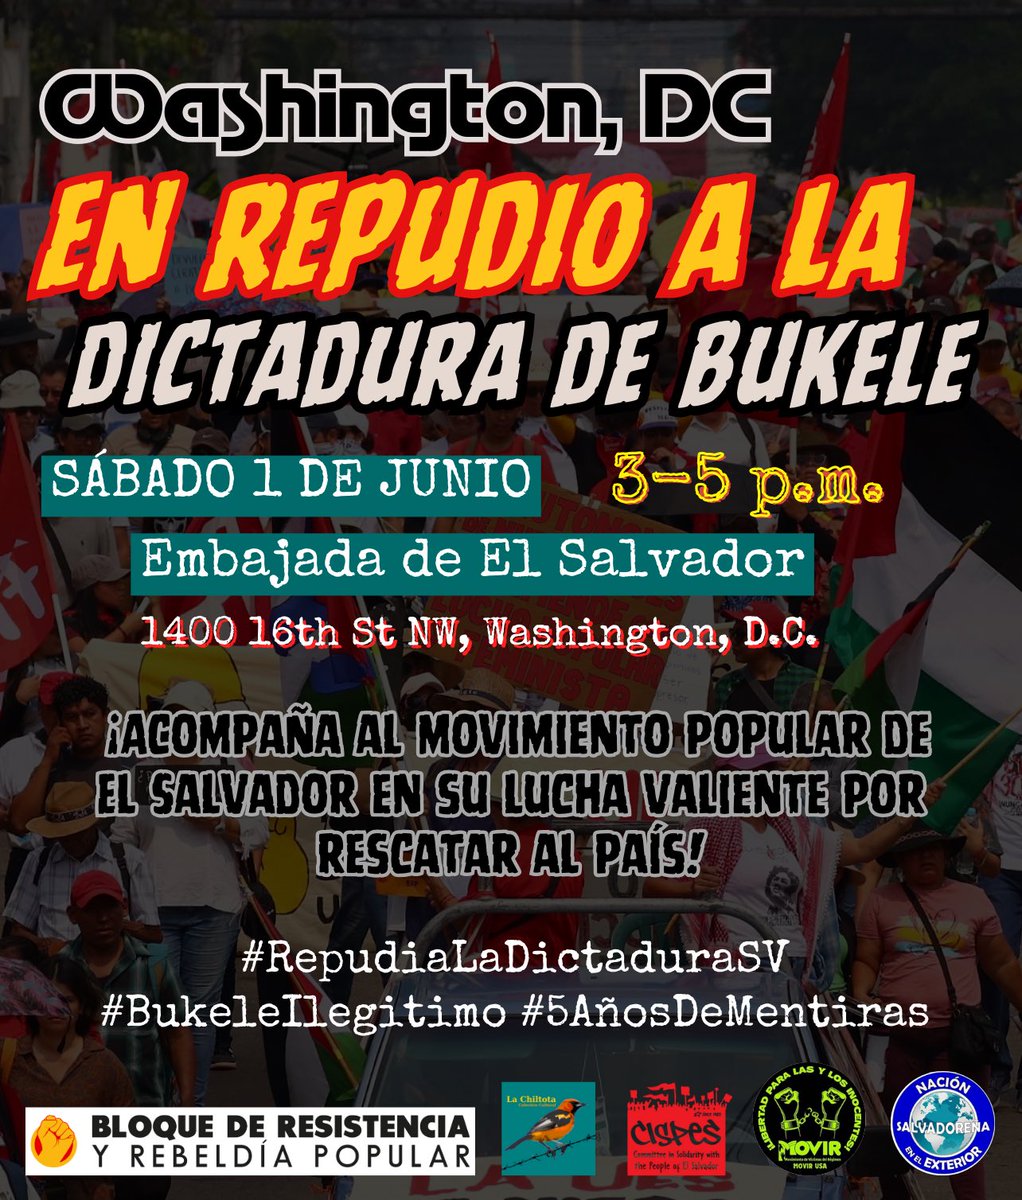 ✊🏾En Washington D.C. también nos unimos a la jornada de repudio a la dictadura de Bukele este sábado, 1 de junio frente la embajada de El Salvador a las 3 pm 📢 ¡Únete y acompaña al movimiento popular en #ElSalvador! #RepudiaLaDictaduraSV #BukeleIlegitimo #5AñosDeMentiras